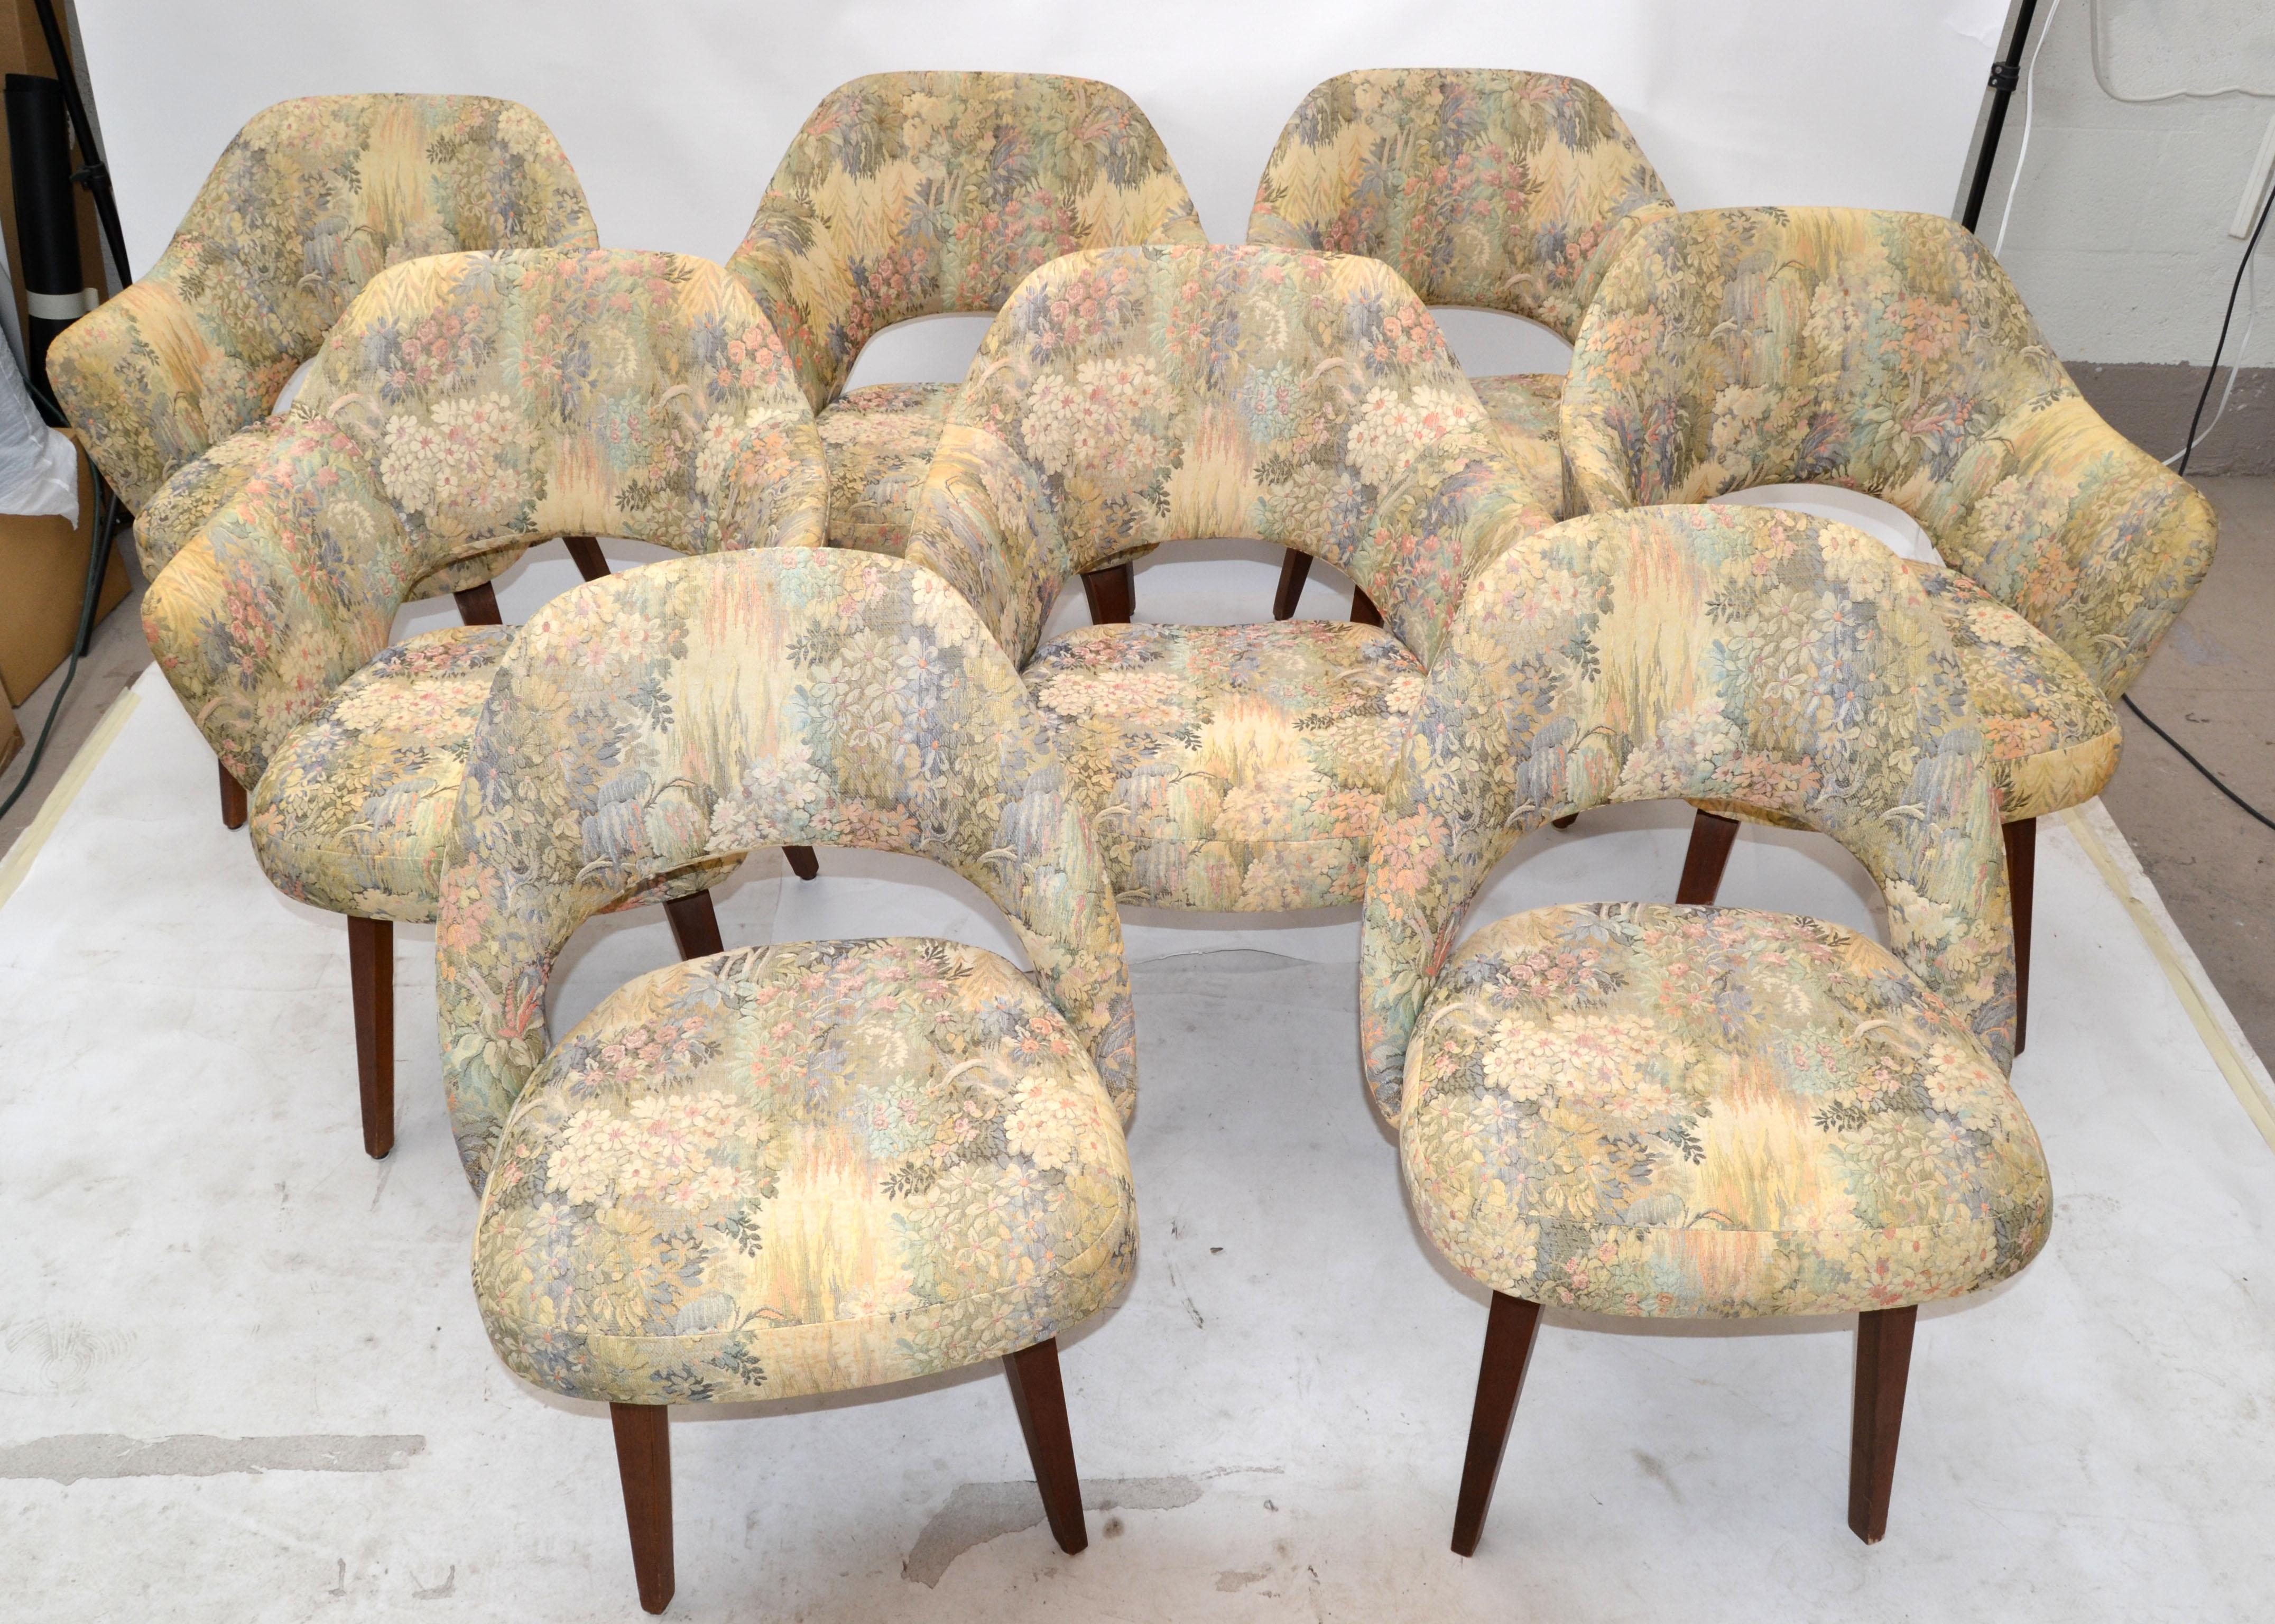 Set of 8 Eeero Saarinen Executive Knoll Dining Chairs Original Fabric Wood Legs 9